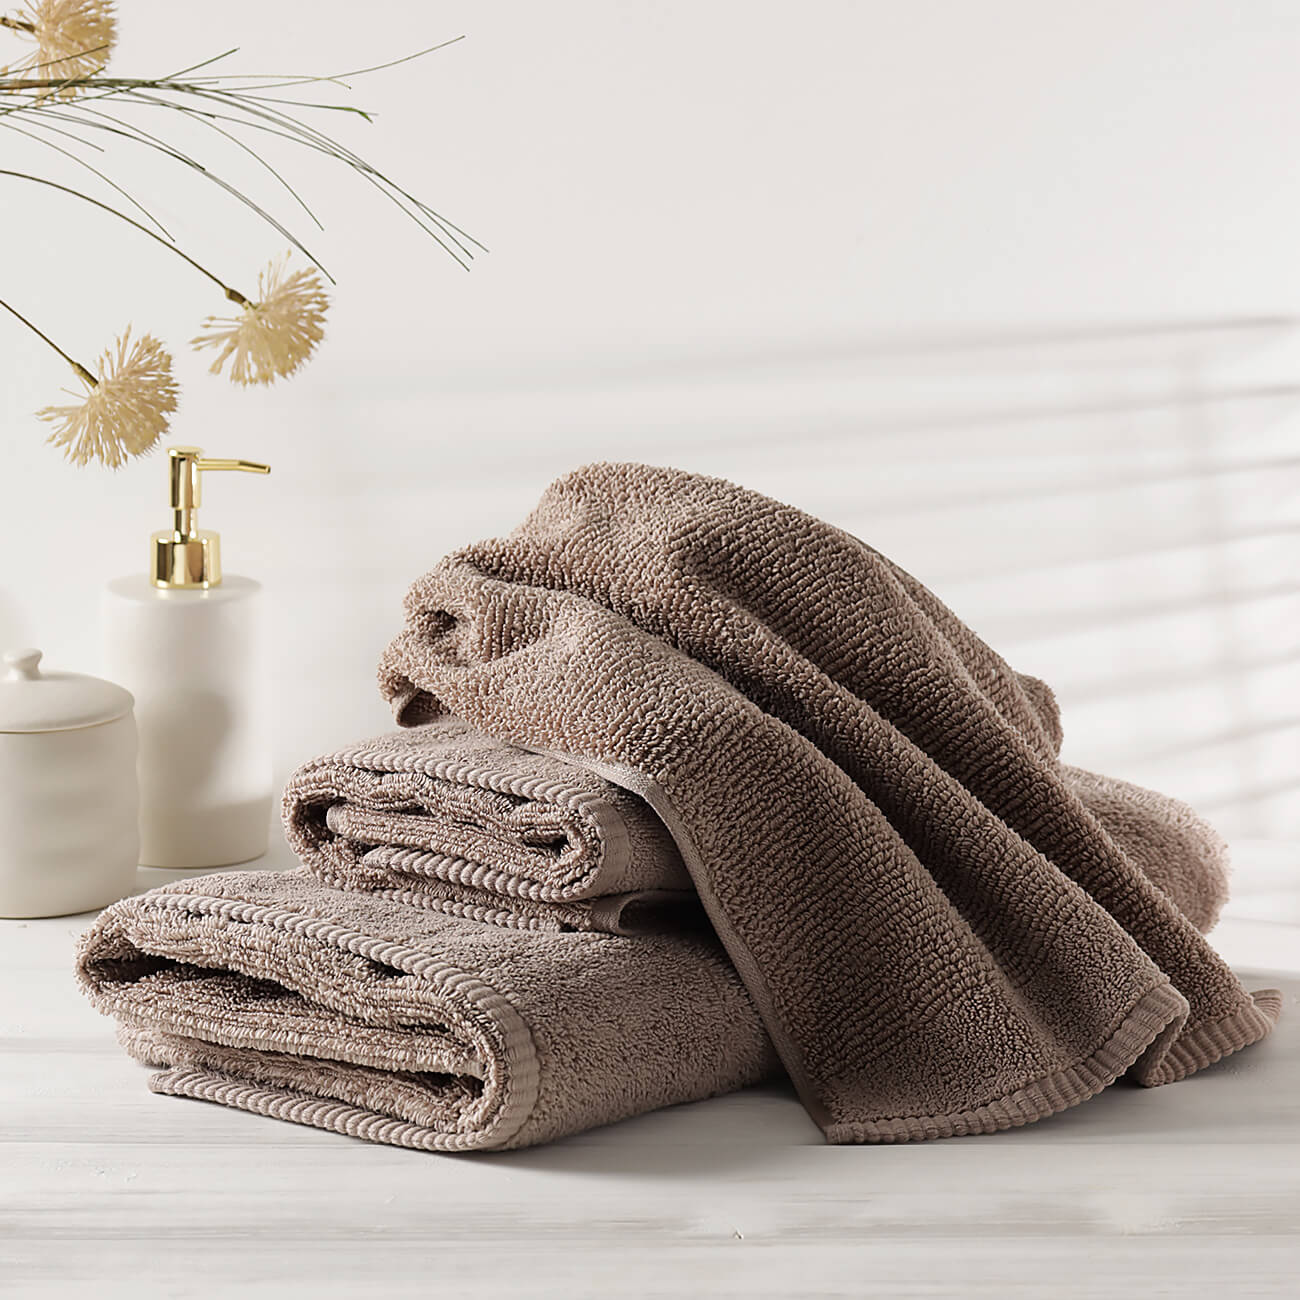 Полотенце, 40х60 см, хлопок, коричневое, Terry cotton набор подарочный этель spring полотенце и аксессуары